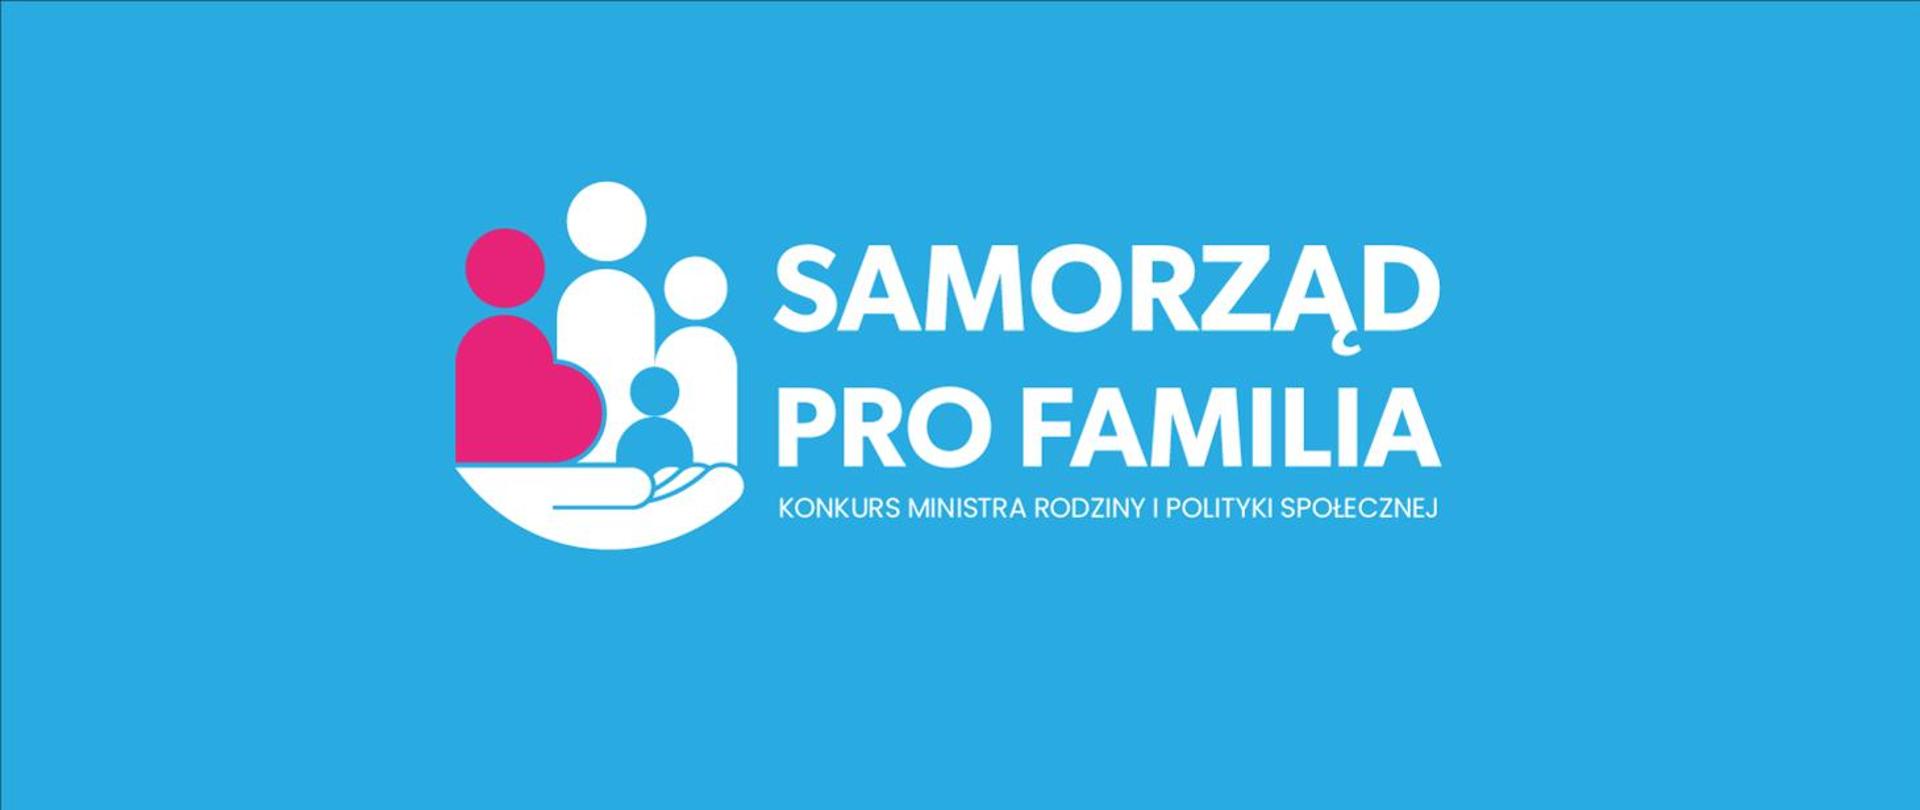 Gmino, zgłoś się do konkursu i zostań Samorządem PRO FAMILIA 2022!